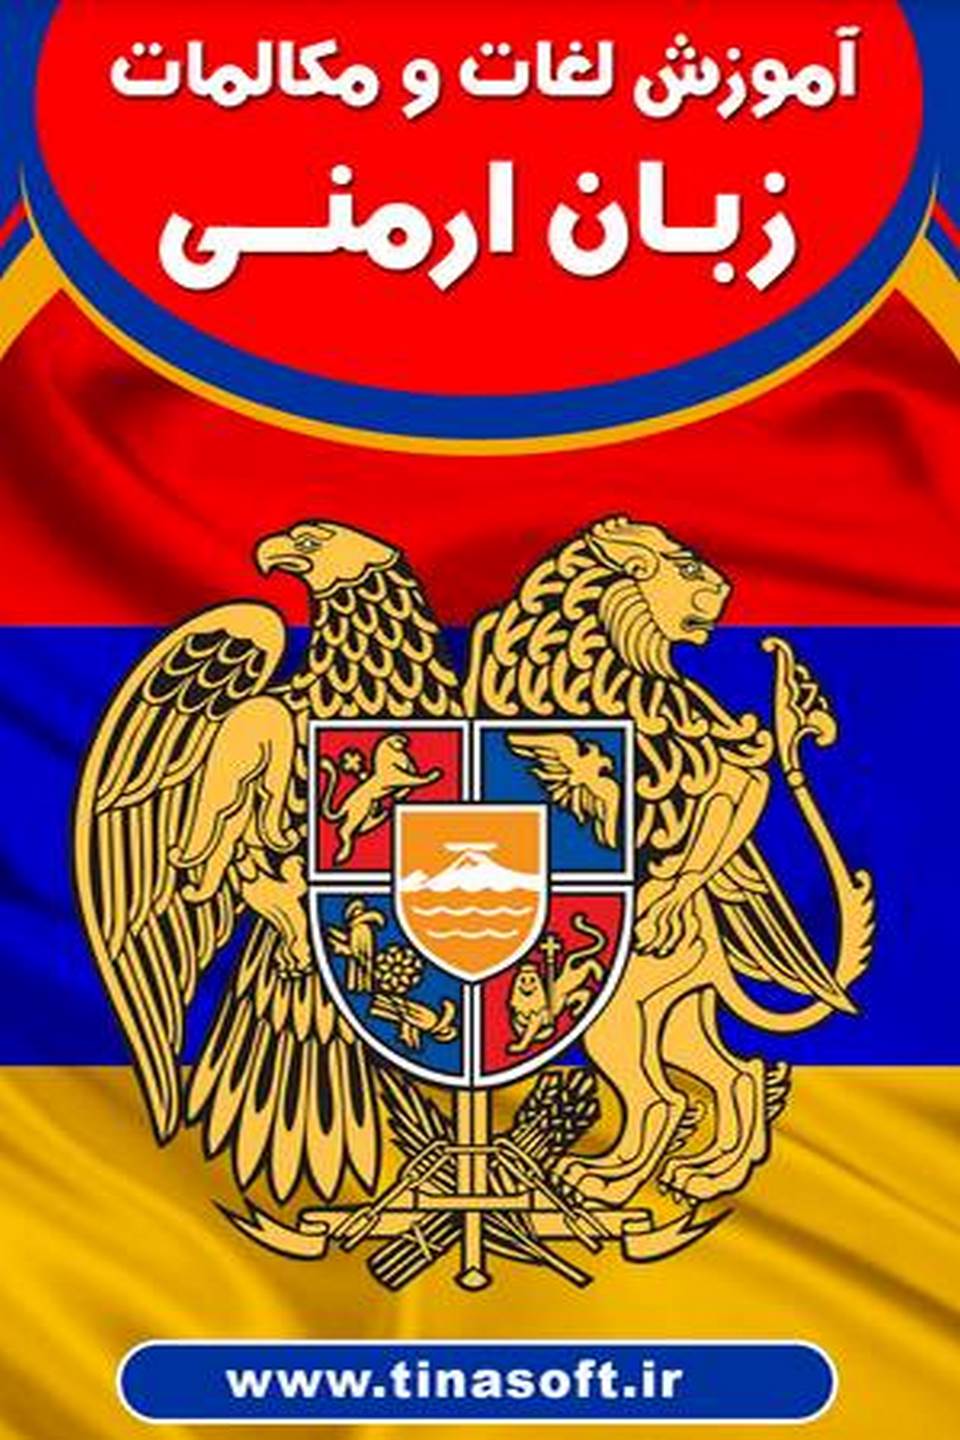 آموزش لغات و مکالمات زبان ارمنی